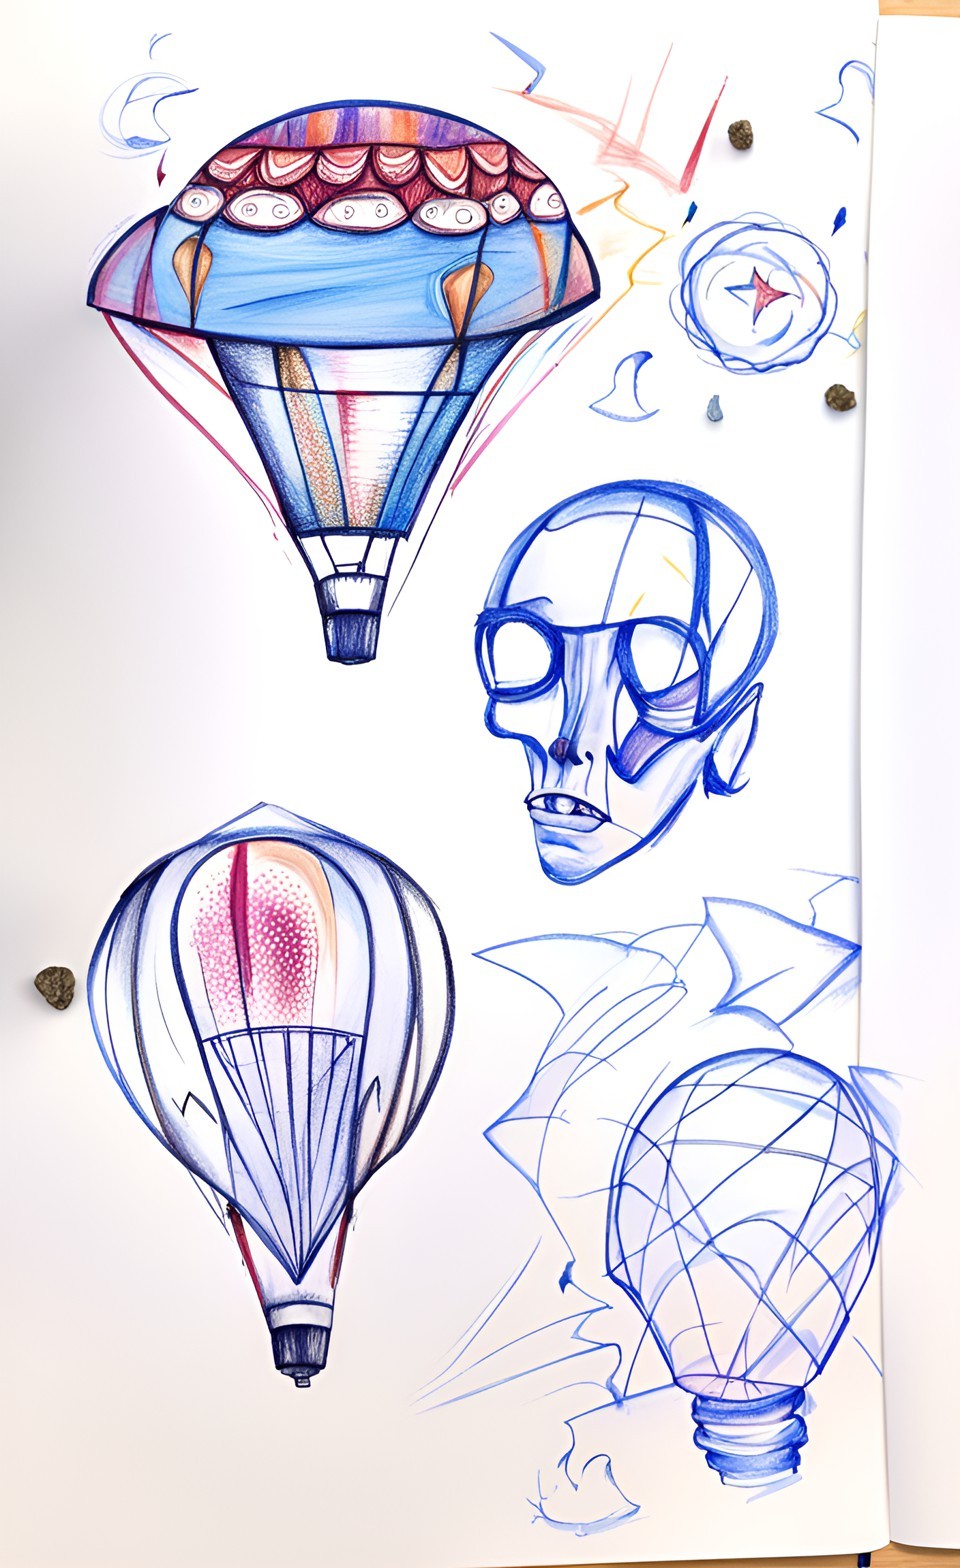 Defteriniz İçin Çizim Fikirleri #6- Drawing ideas for Your Drawing Notebook